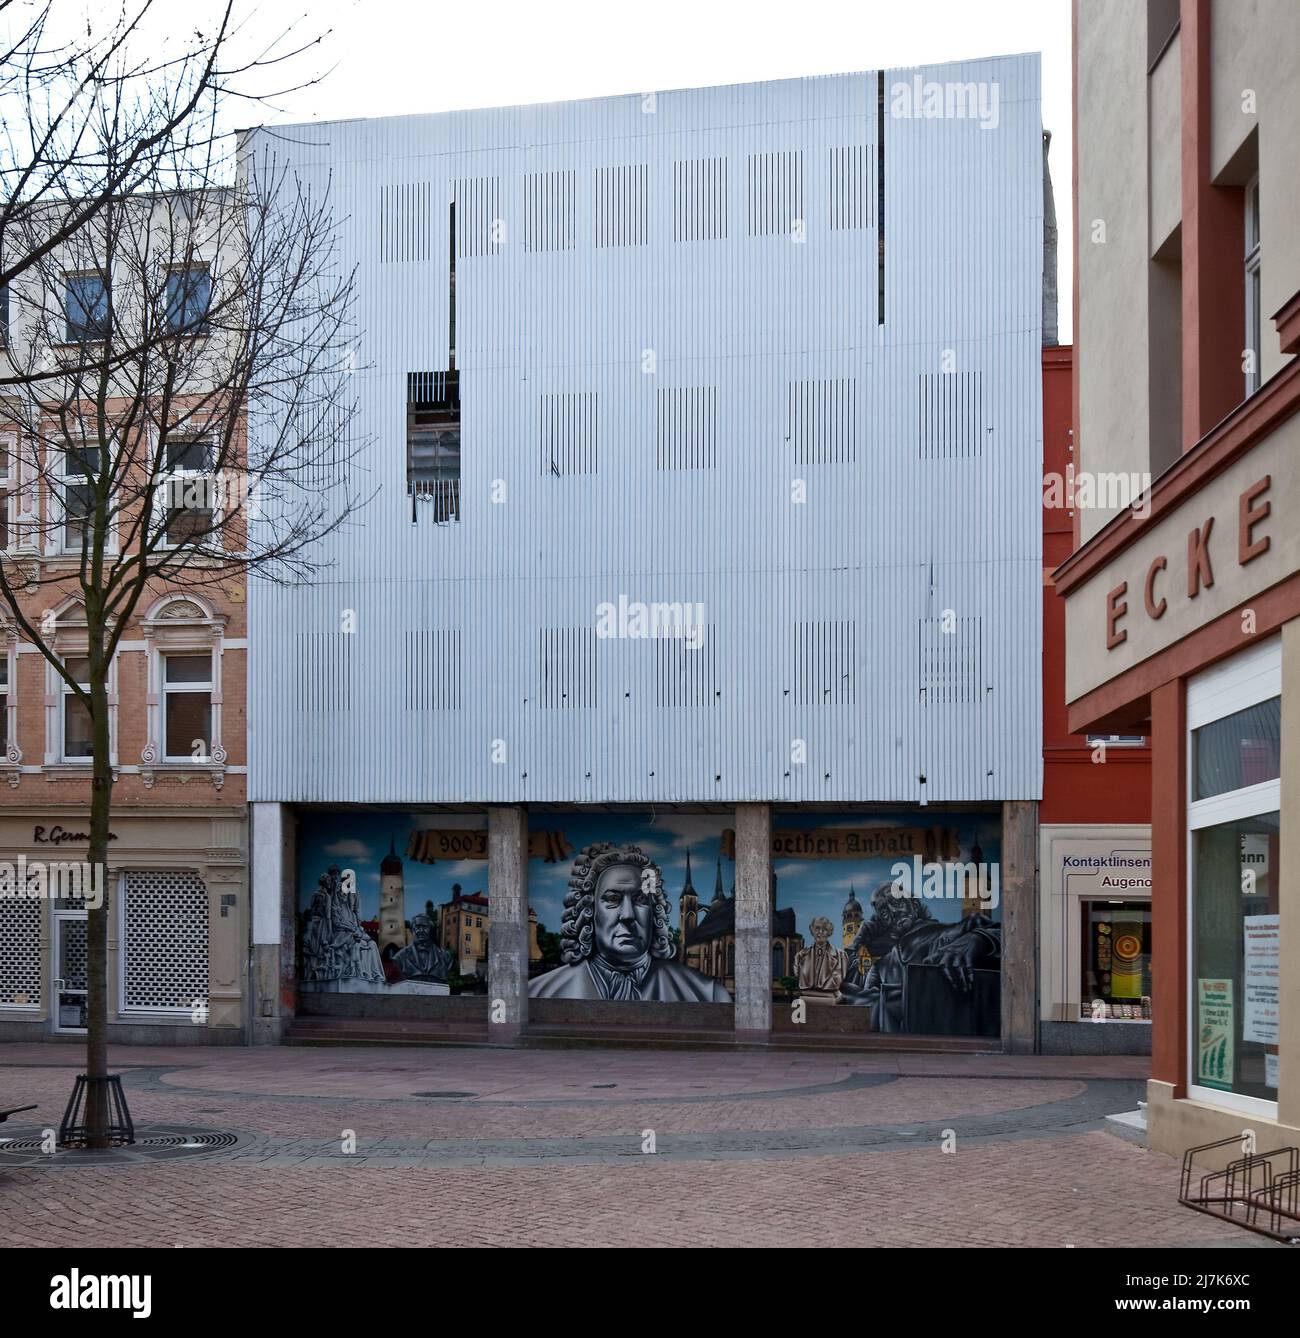 Köthen Anhalt Schalaunische Straße leerstehendes Geschäftshaus mit beschädigter Fassadenverkleidung 74581 darunter moderne Wandmalerei mit stadtgesch Foto de stock